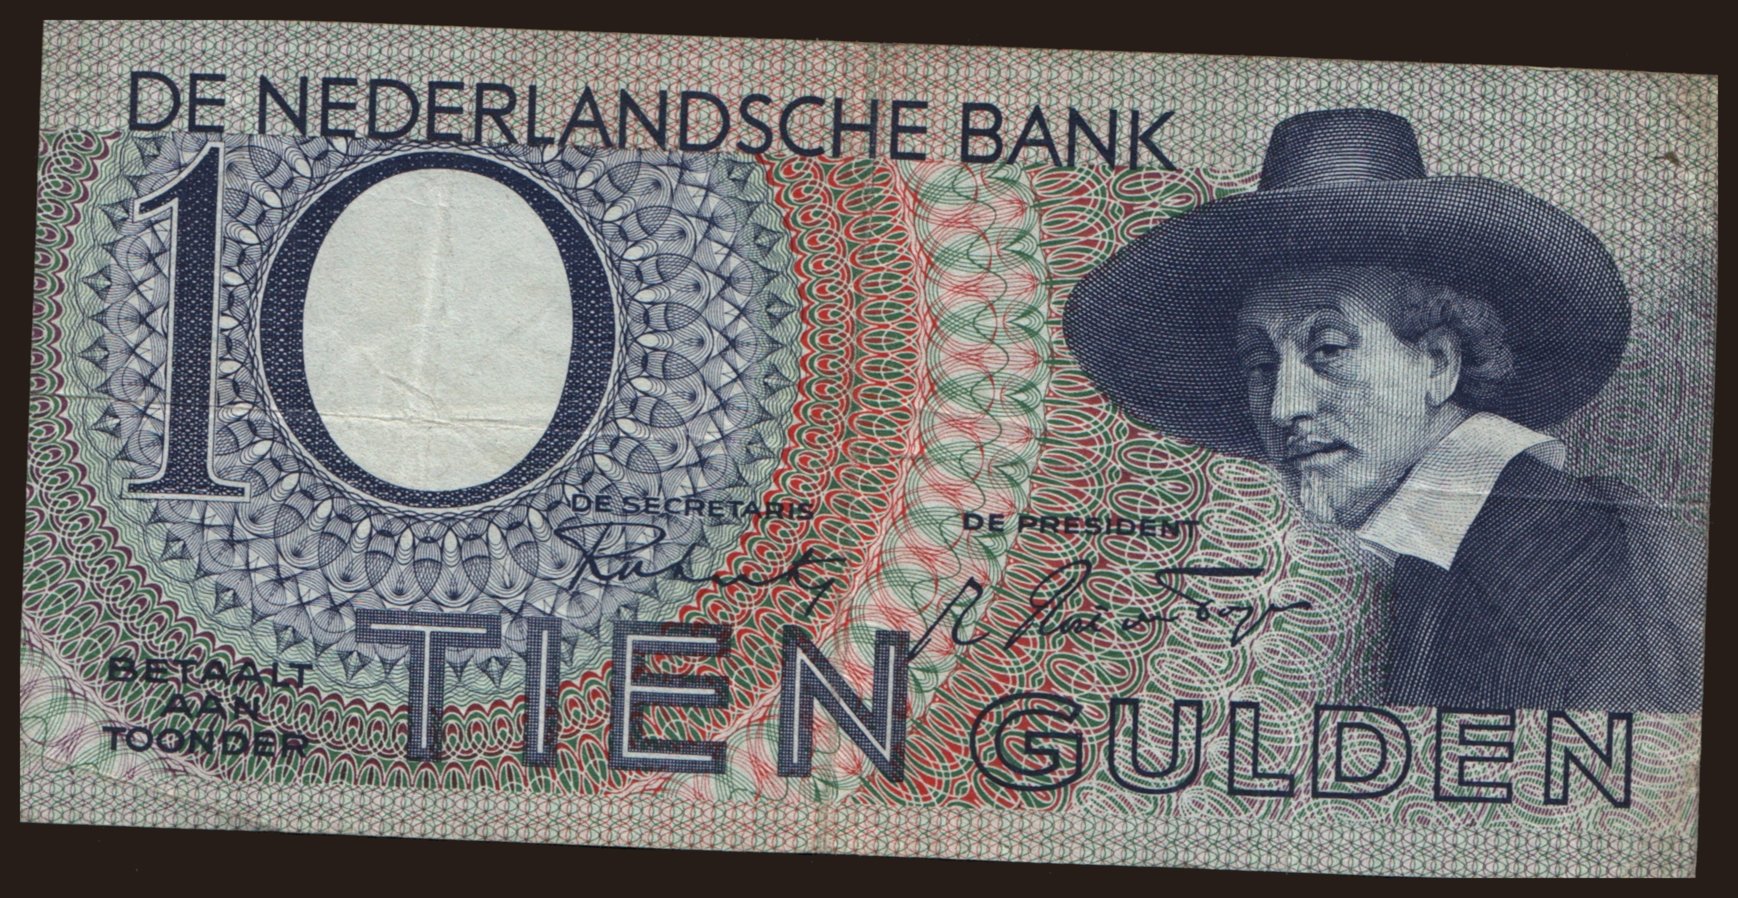 10 gulden, 1943